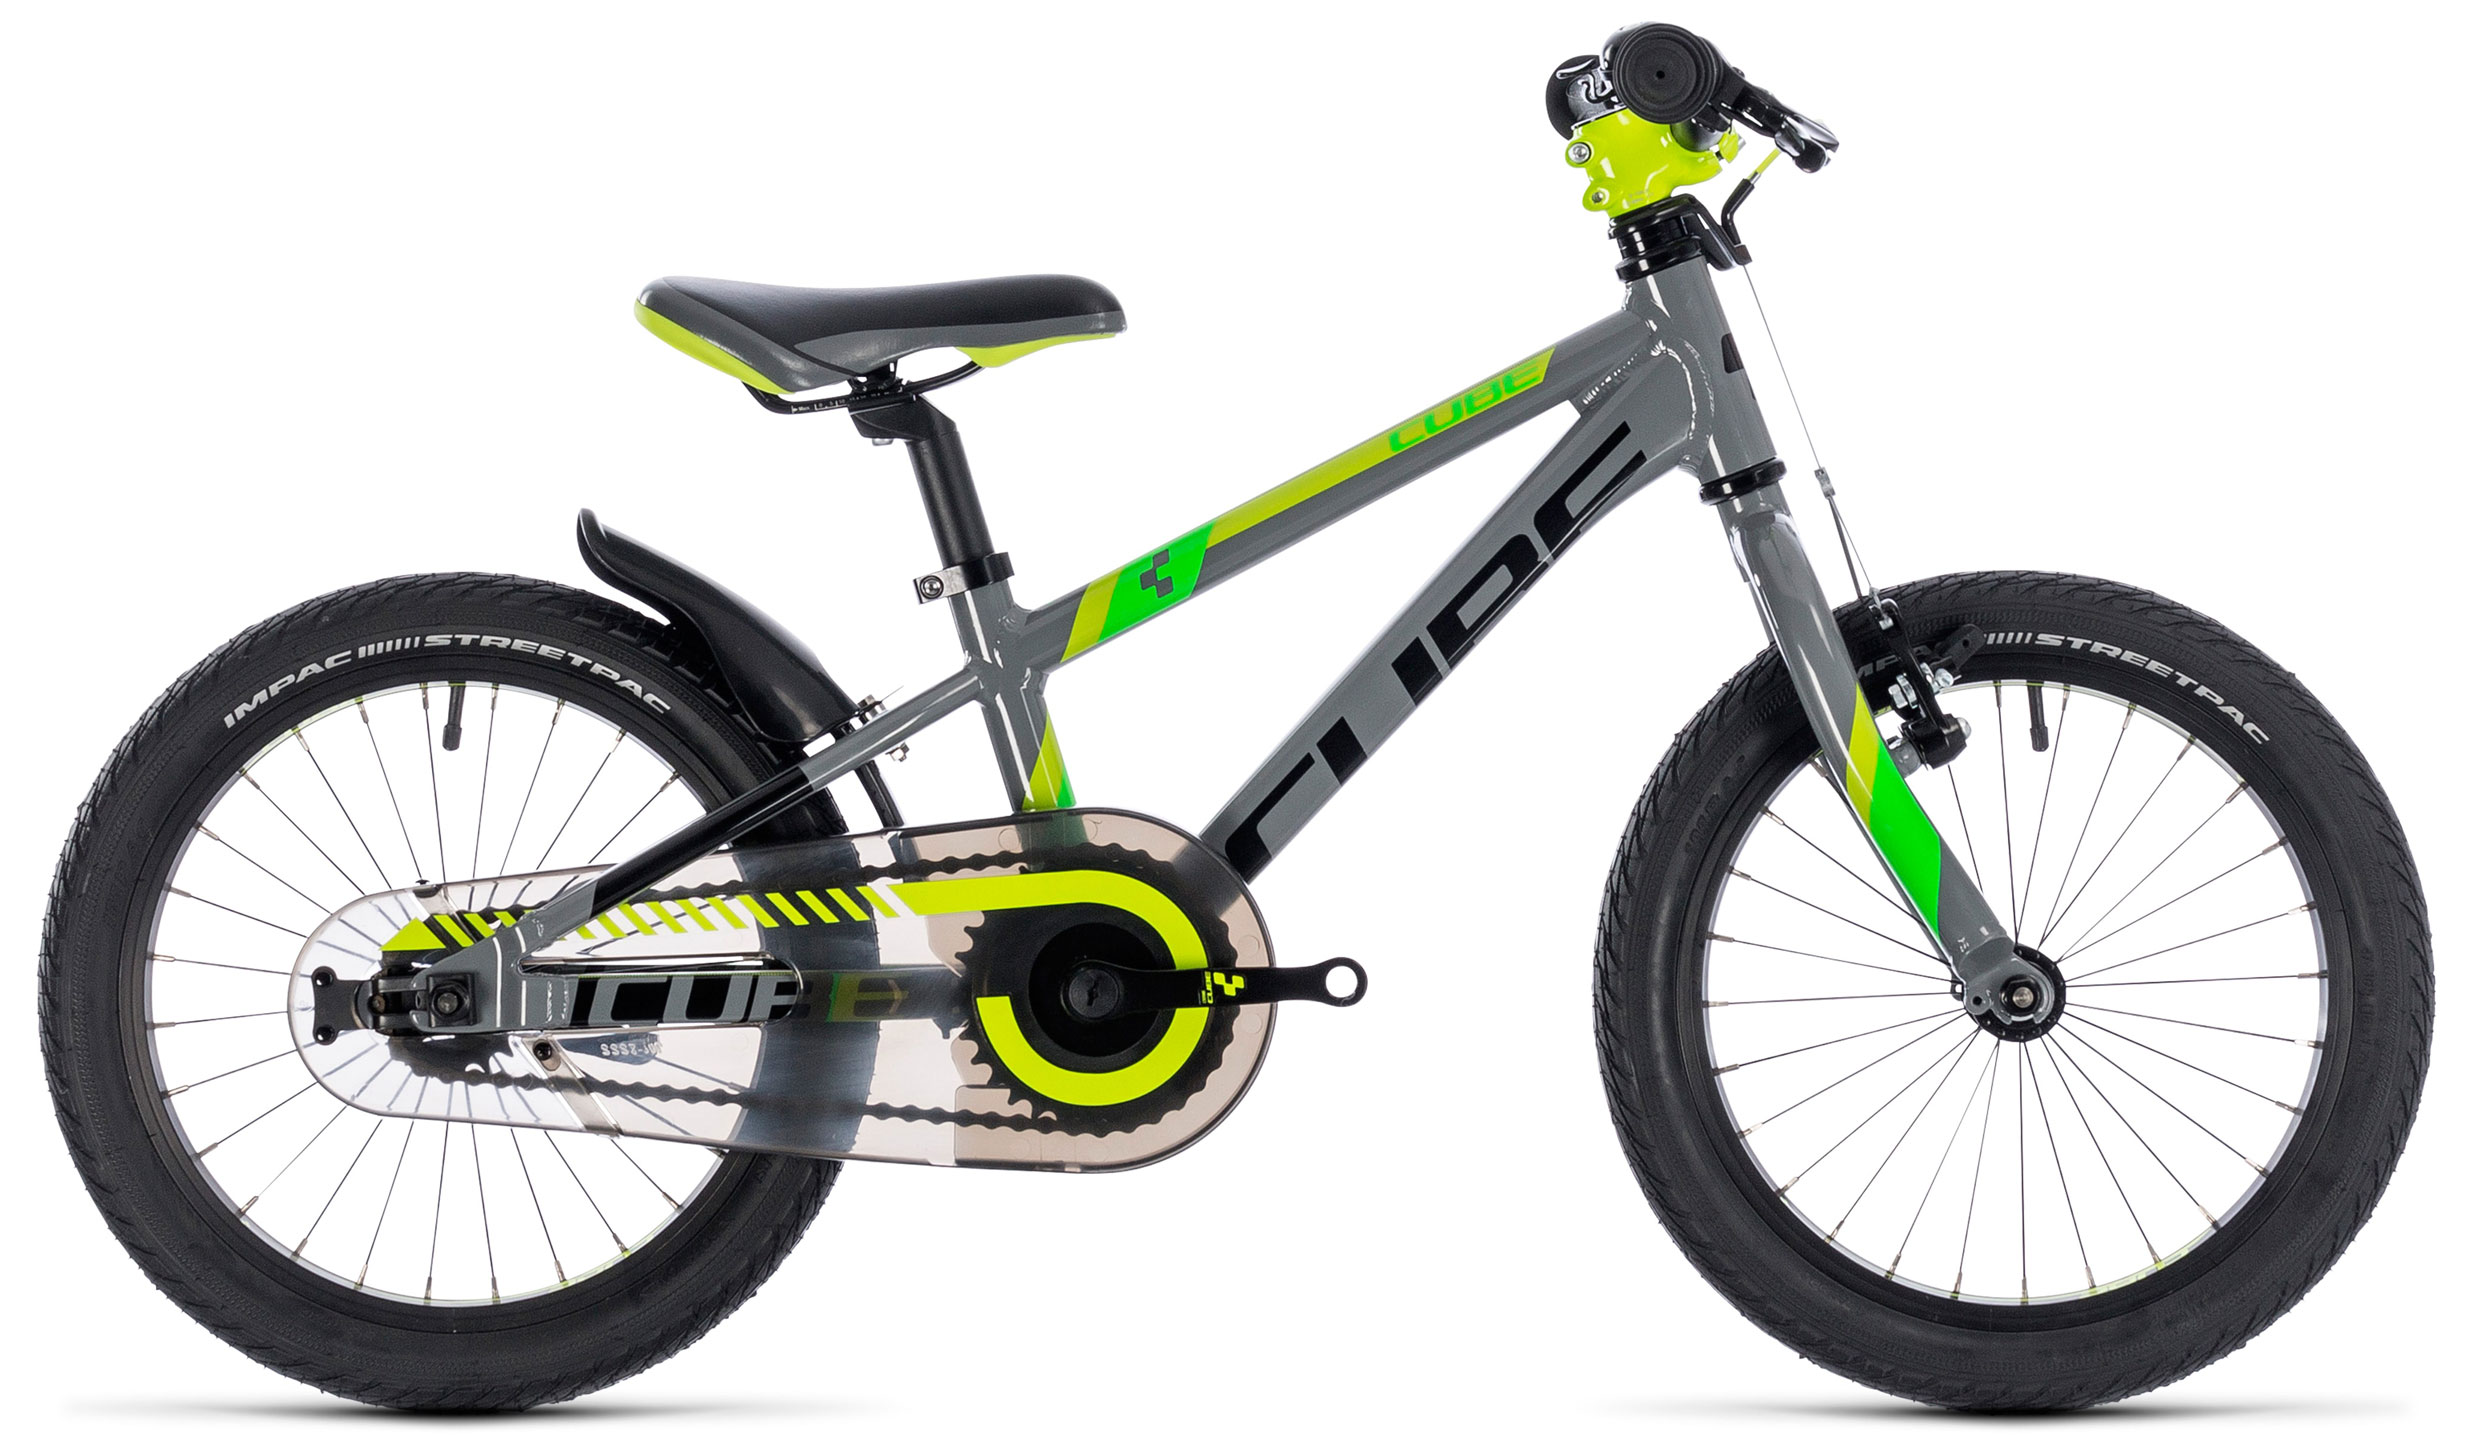  Отзывы о Детском велосипеде Cube Kid 160 2019